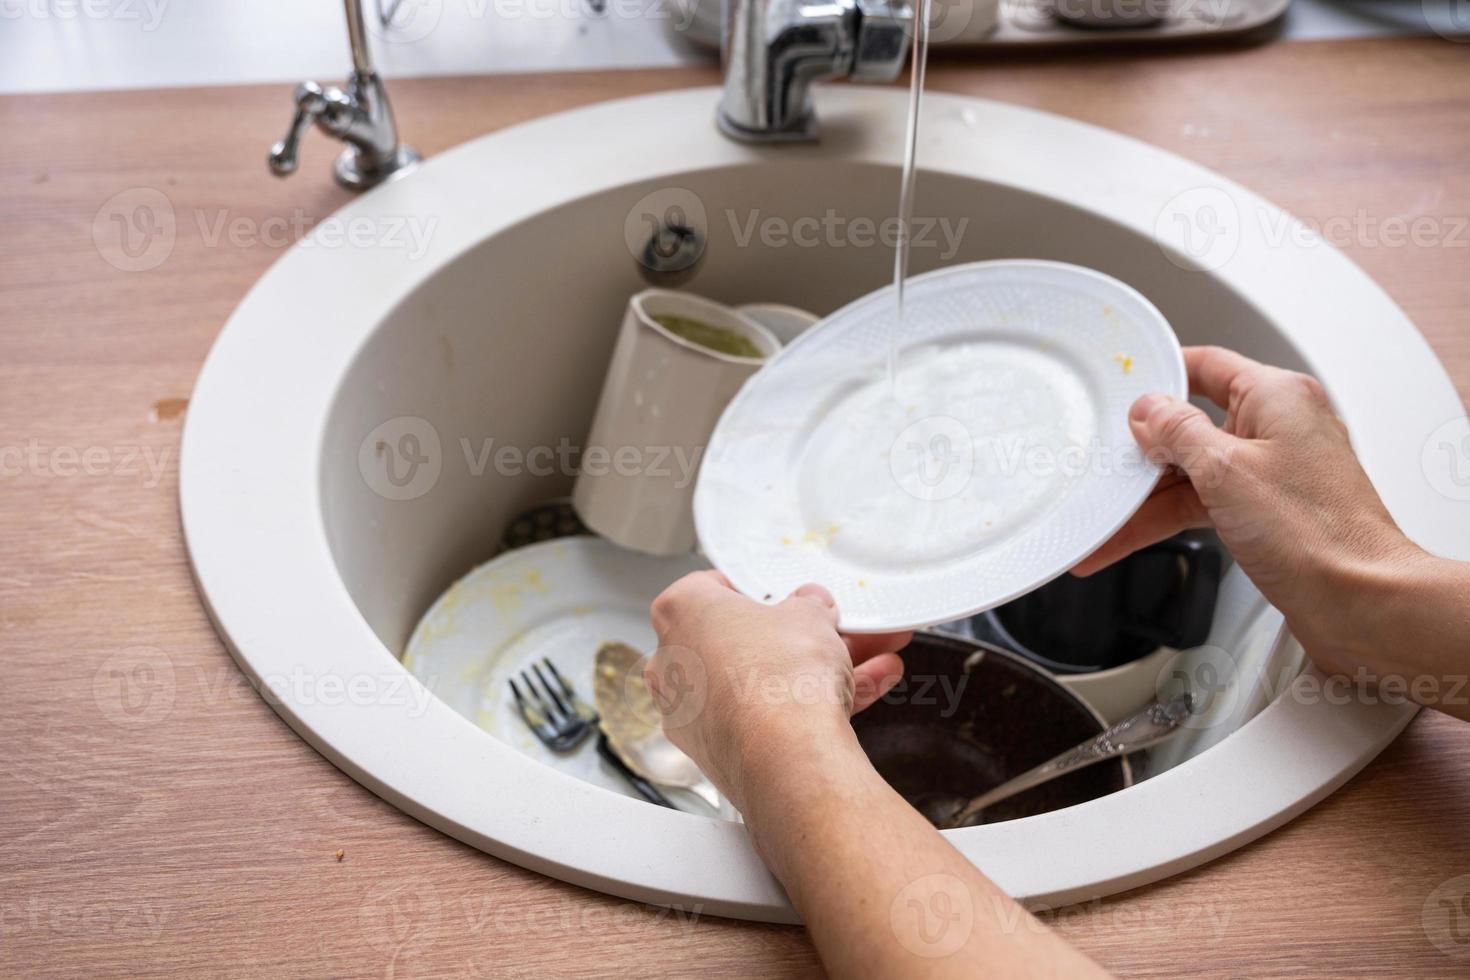 vrouwen handen wassen de bord onder de kraan water. vuil gerechten in de wastafel in de keuken, knoeien na lunch, te lui naar wassen borden. keuken schoonmaak, wasmiddel, schoonmaak Diensten foto